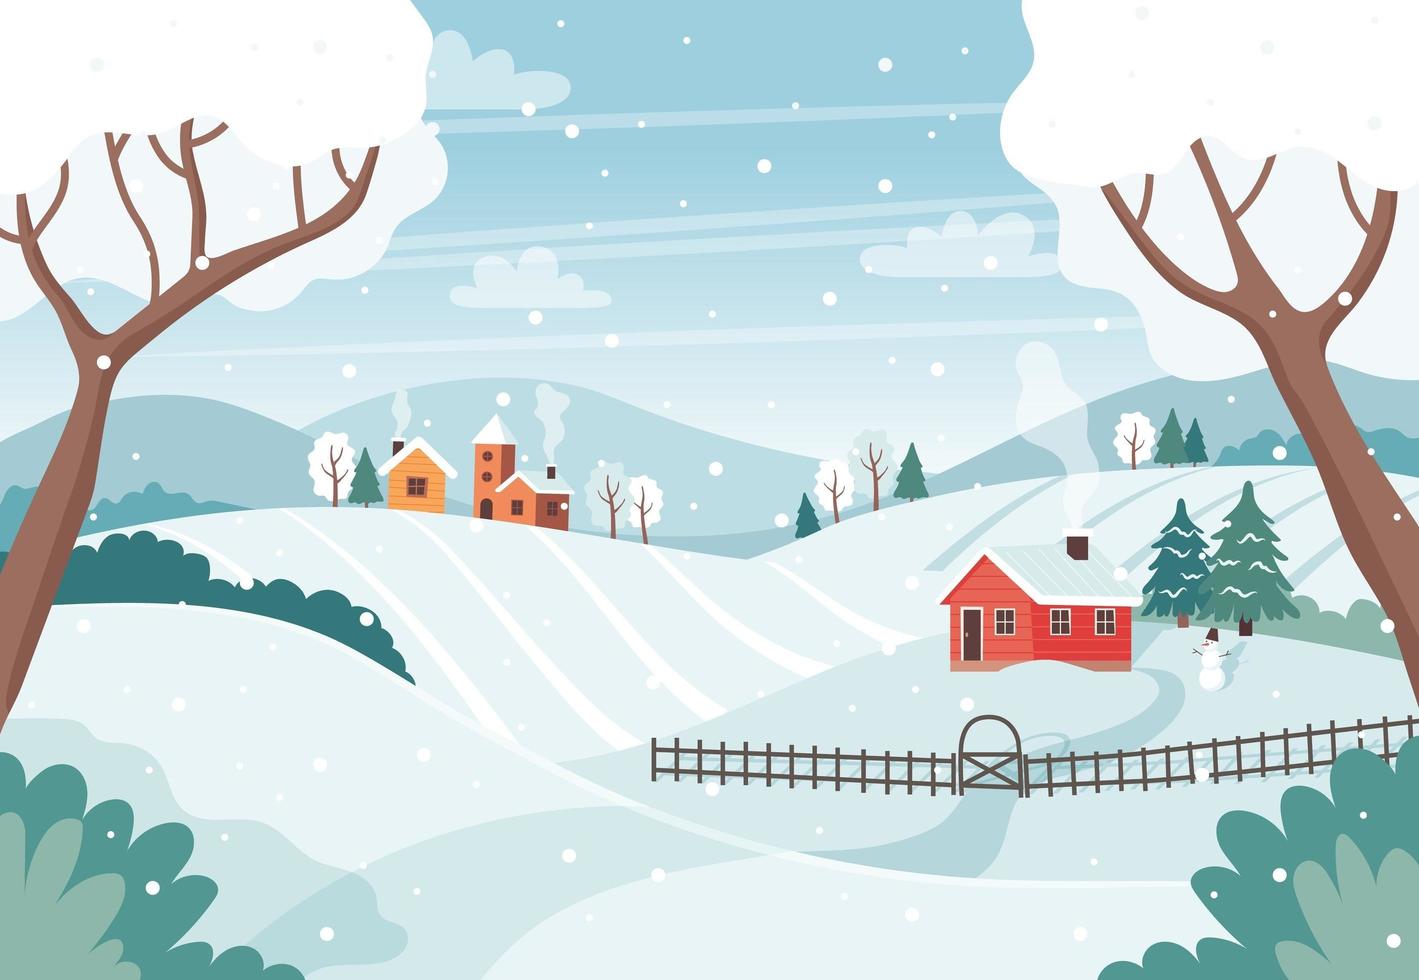 Winterlandschaft mit Bäumen, Feldern, Häusern. saisonale Landschaft. vektorillustration im flachen stil vektor